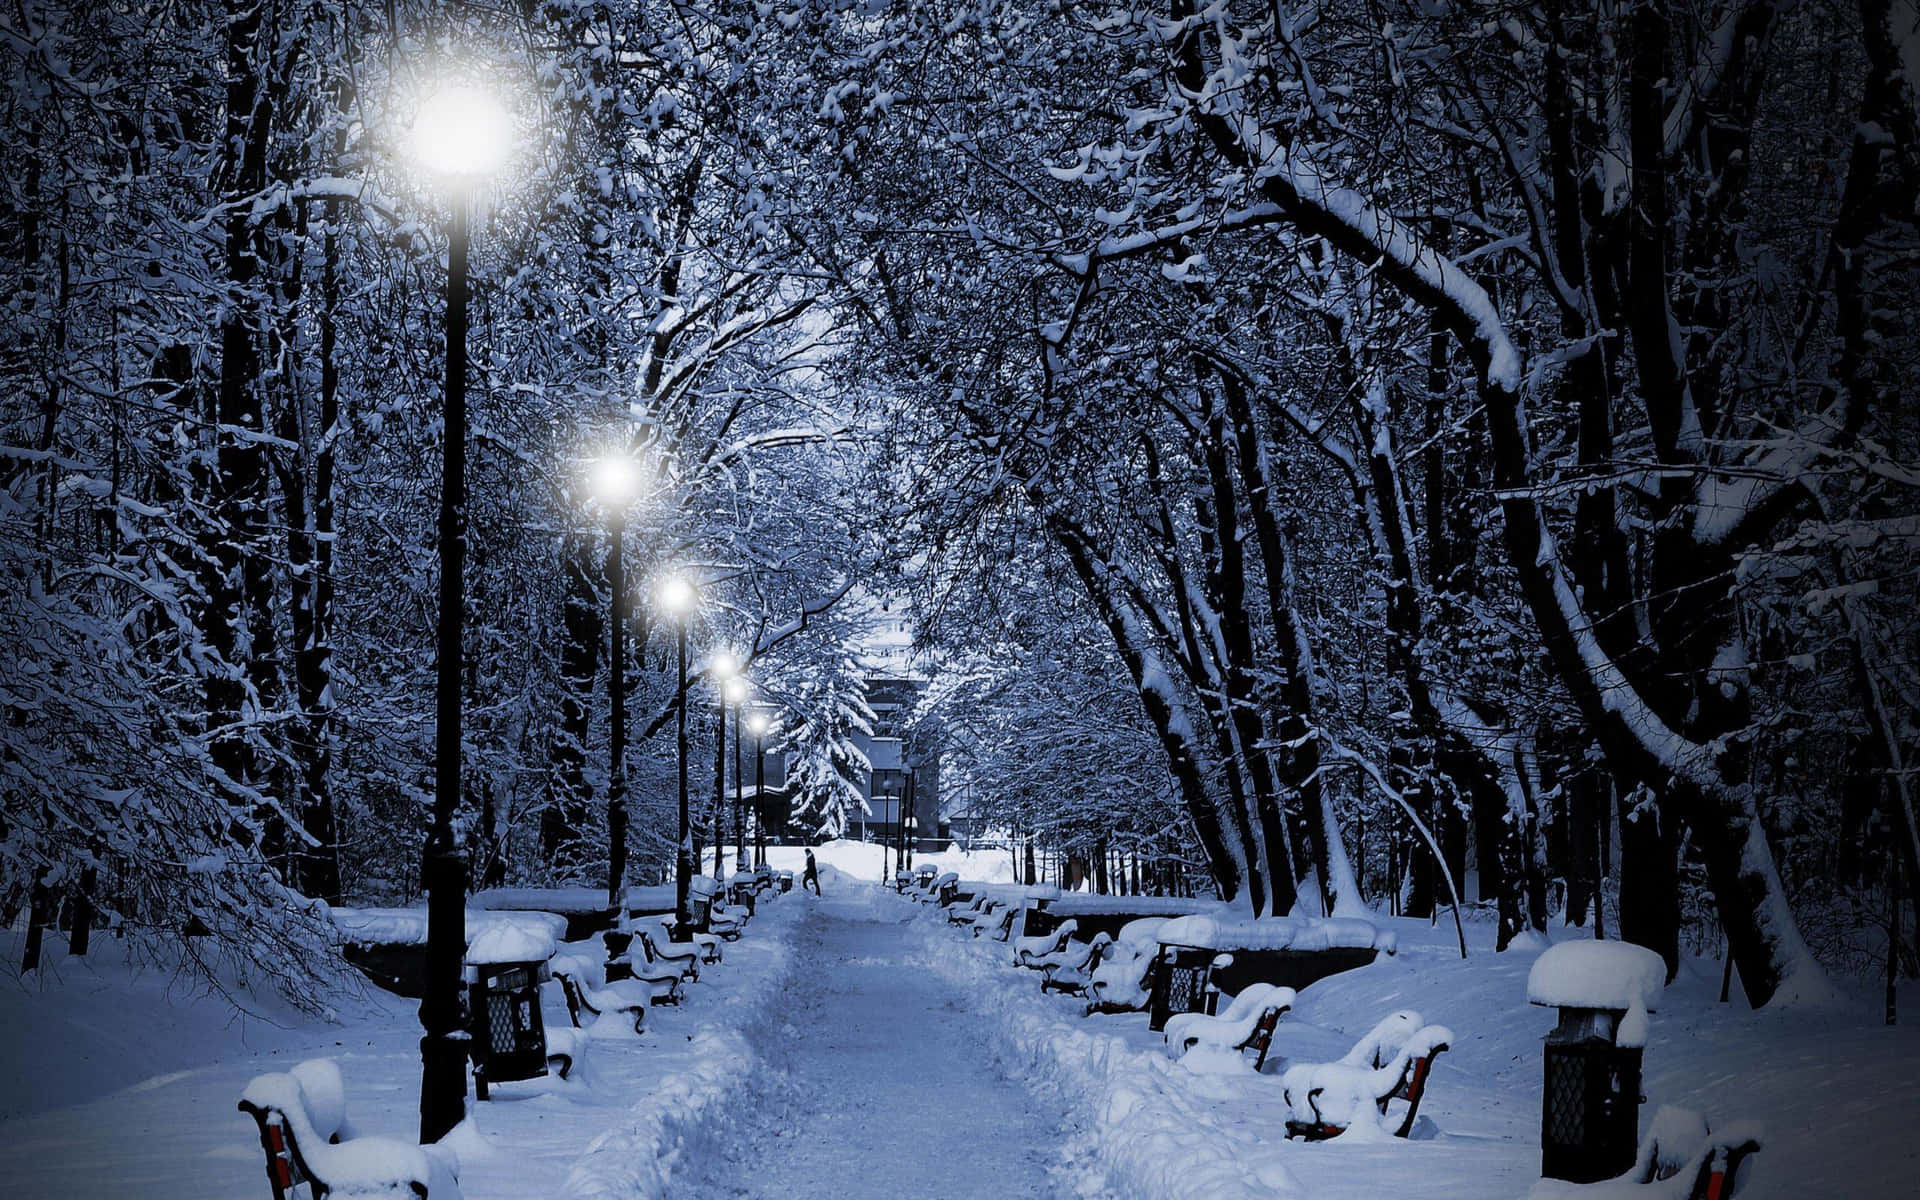 Nyd freden og skønheden af et vinter landskab prydet med jule sne. Wallpaper